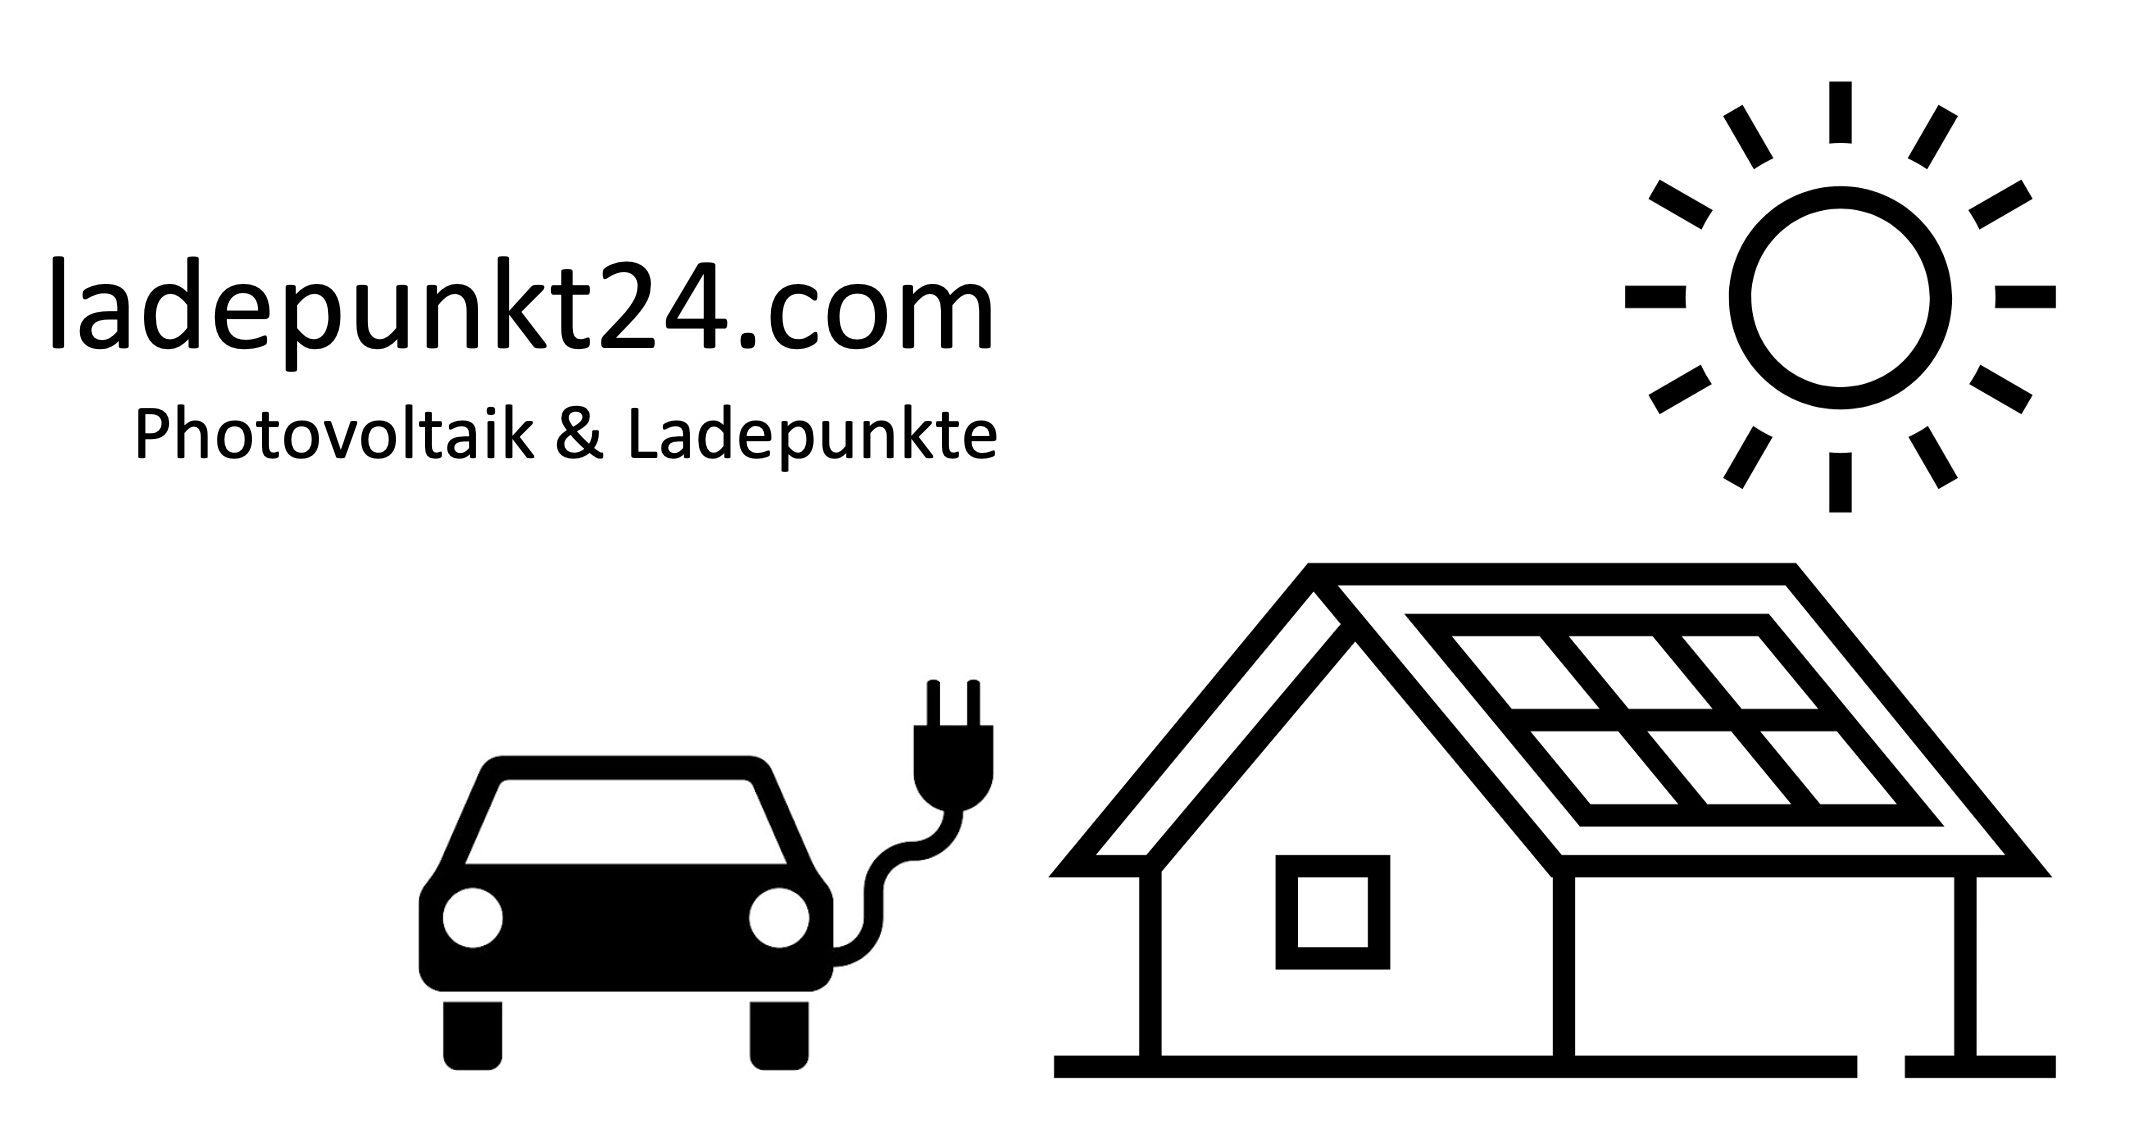 ladepunkt24.com